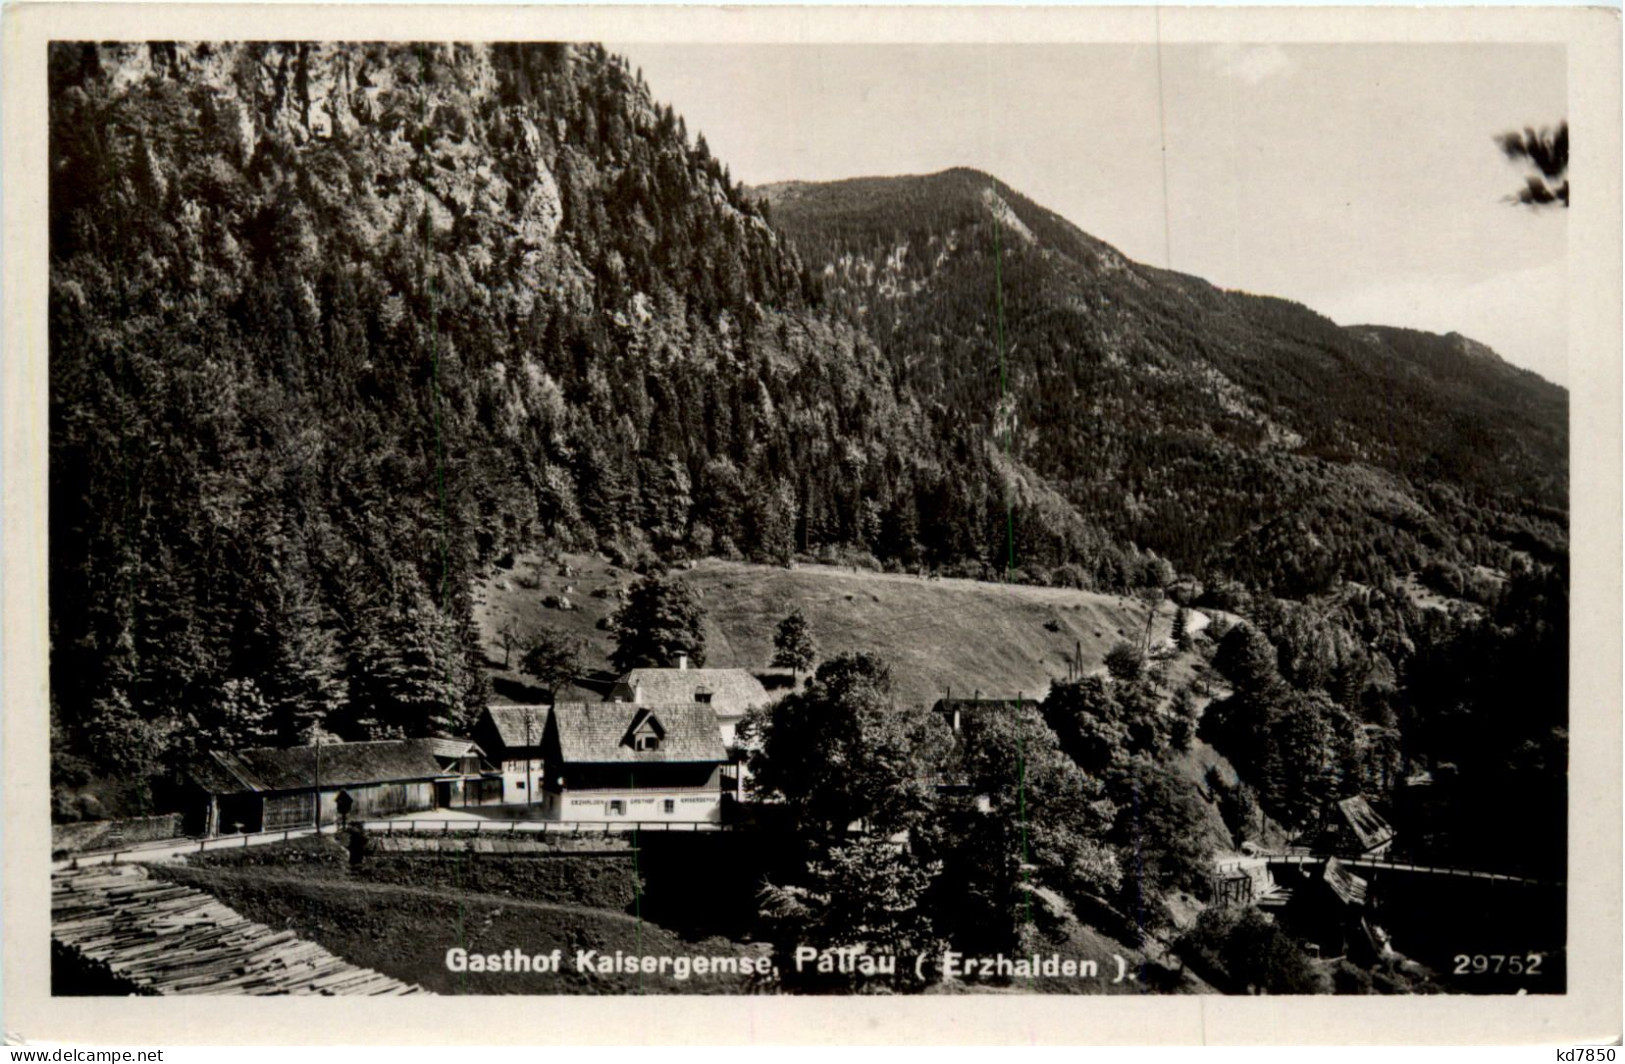 Gasthof Kaisergemse, Pallau (Erzhalden) - Liezen